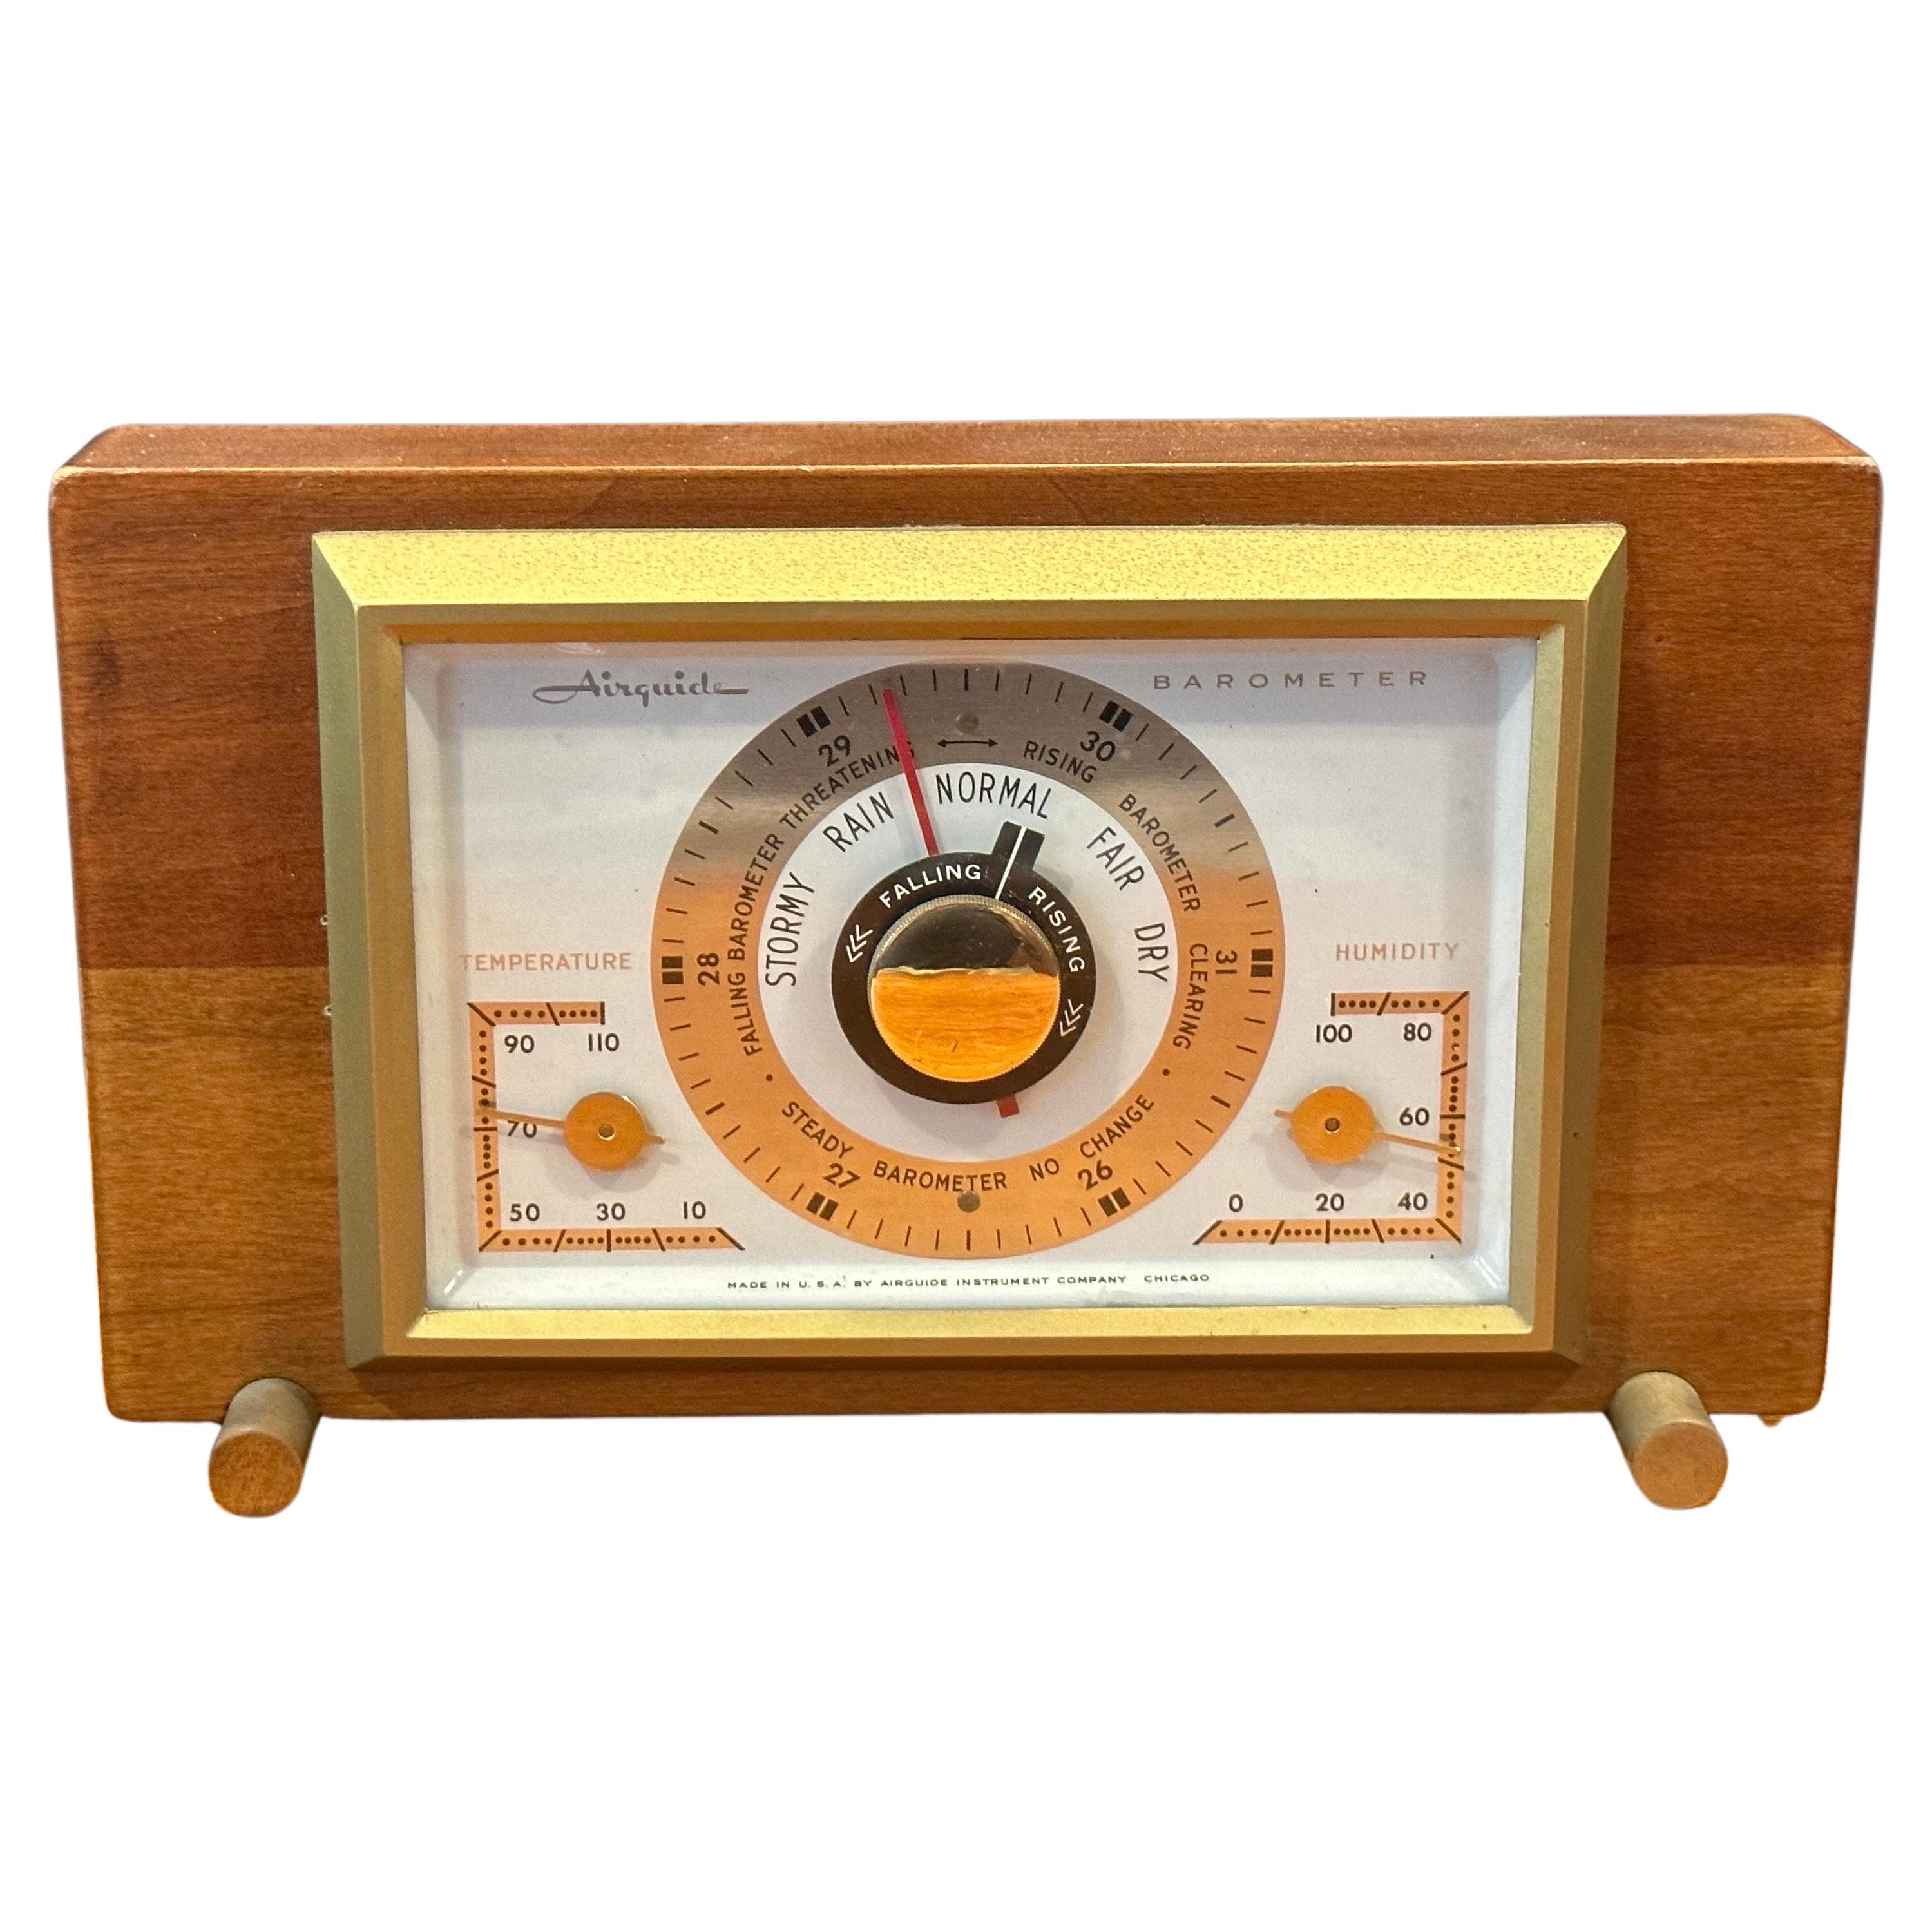 Baromètre de bureau/station météo par Airguide Instrument Company en vente